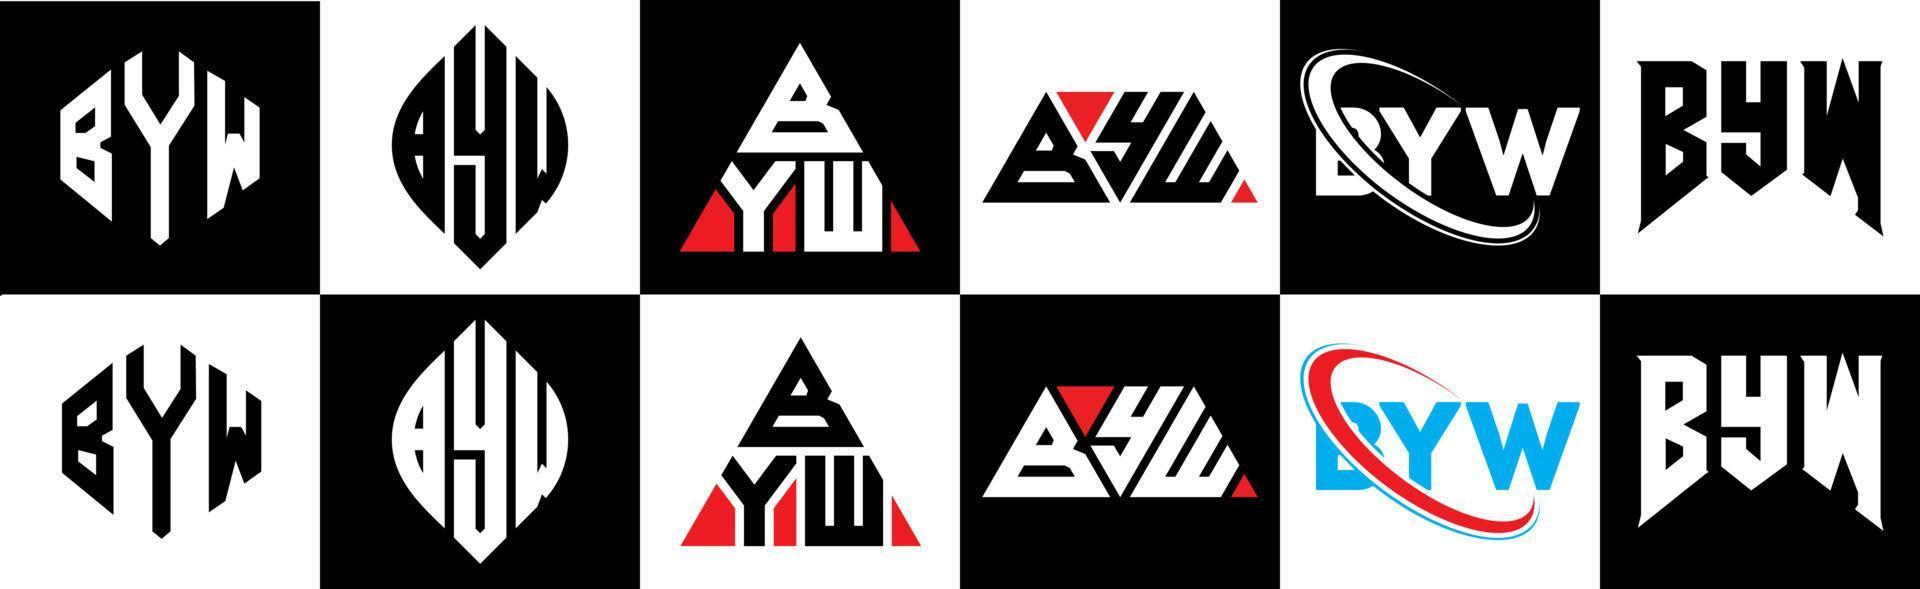 Byw-Buchstaben-Logo-Design in sechs Stilen. Byw Polygon, Kreis, Dreieck, Sechseck, flacher und einfacher Stil mit schwarzem und weißem Farbvariations-Buchstabenlogo auf einer Zeichenfläche. byw minimalistisches und klassisches Logo vektor